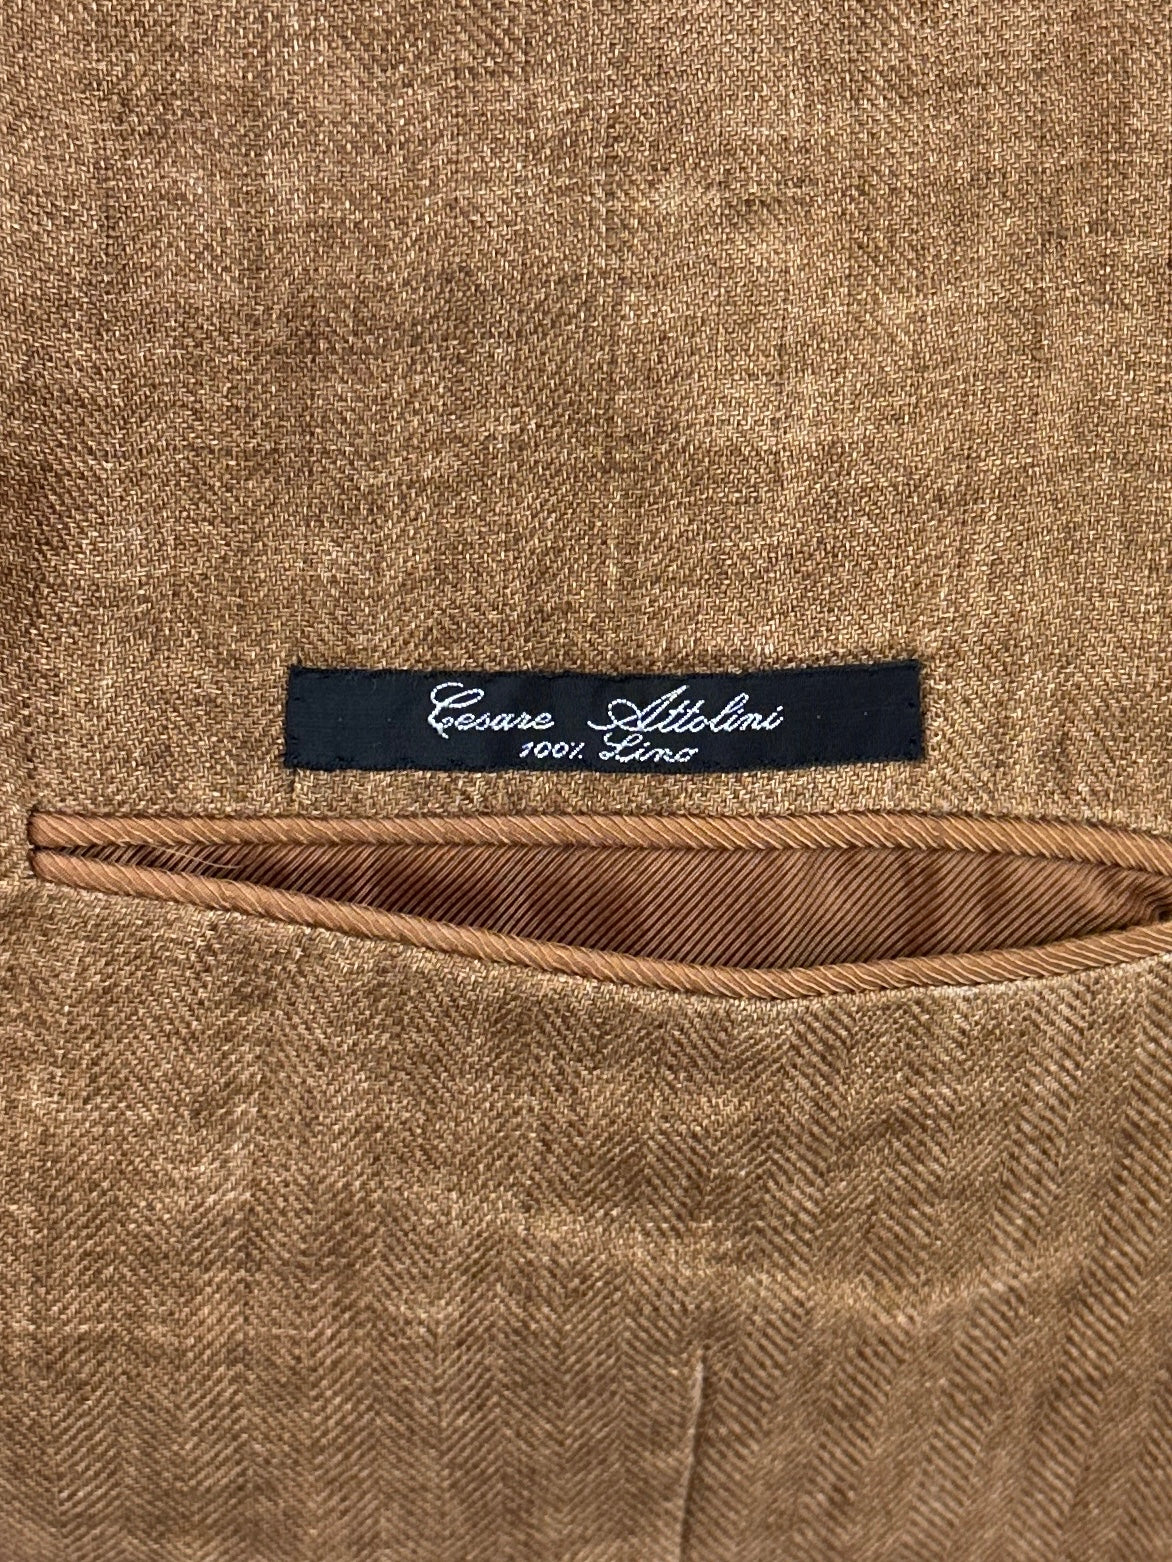 Cesare Attolini Tobacco Brown Linen Jacket